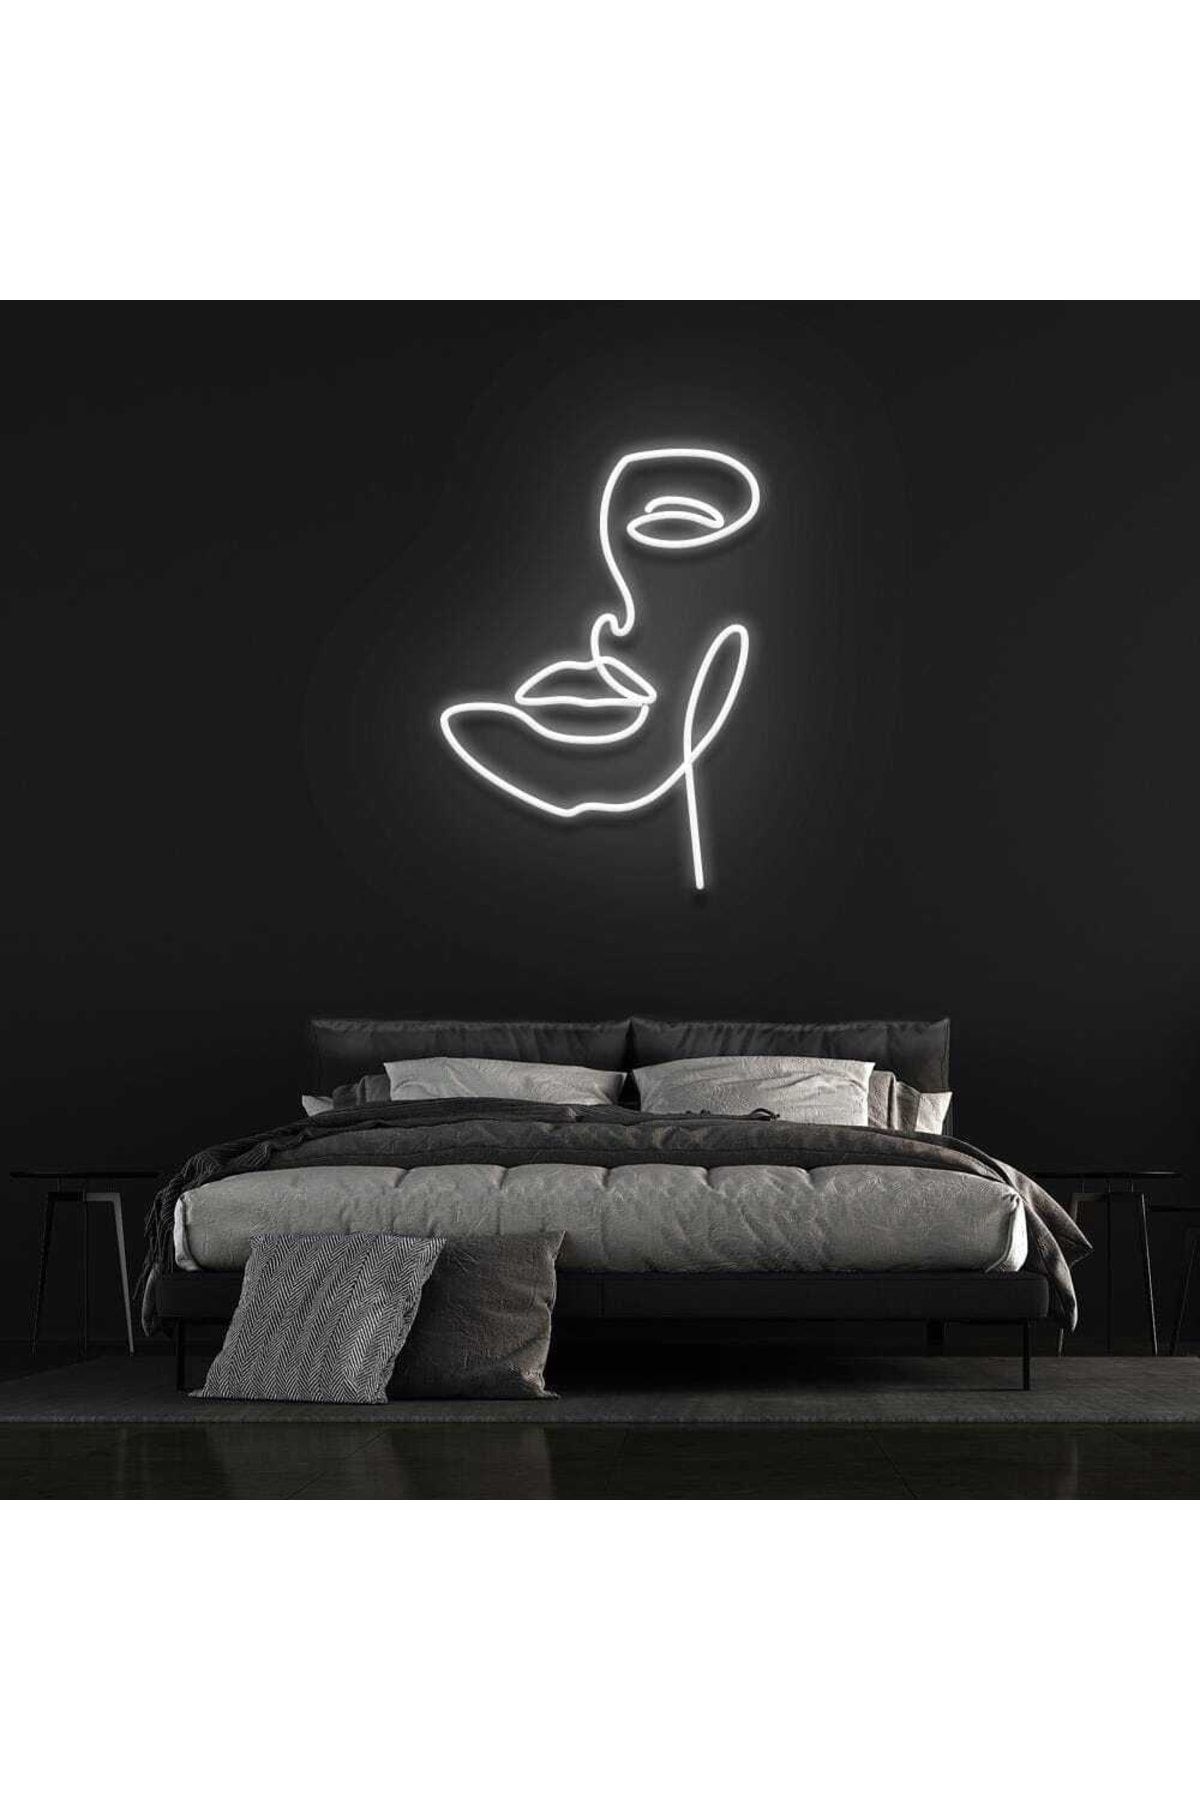 SMİLE CONCEPT Yarım Yüz - Neon Led Dekoratif Duvar Yazısı Tabelası Aydınlatması Gece Lambası Smc -1018